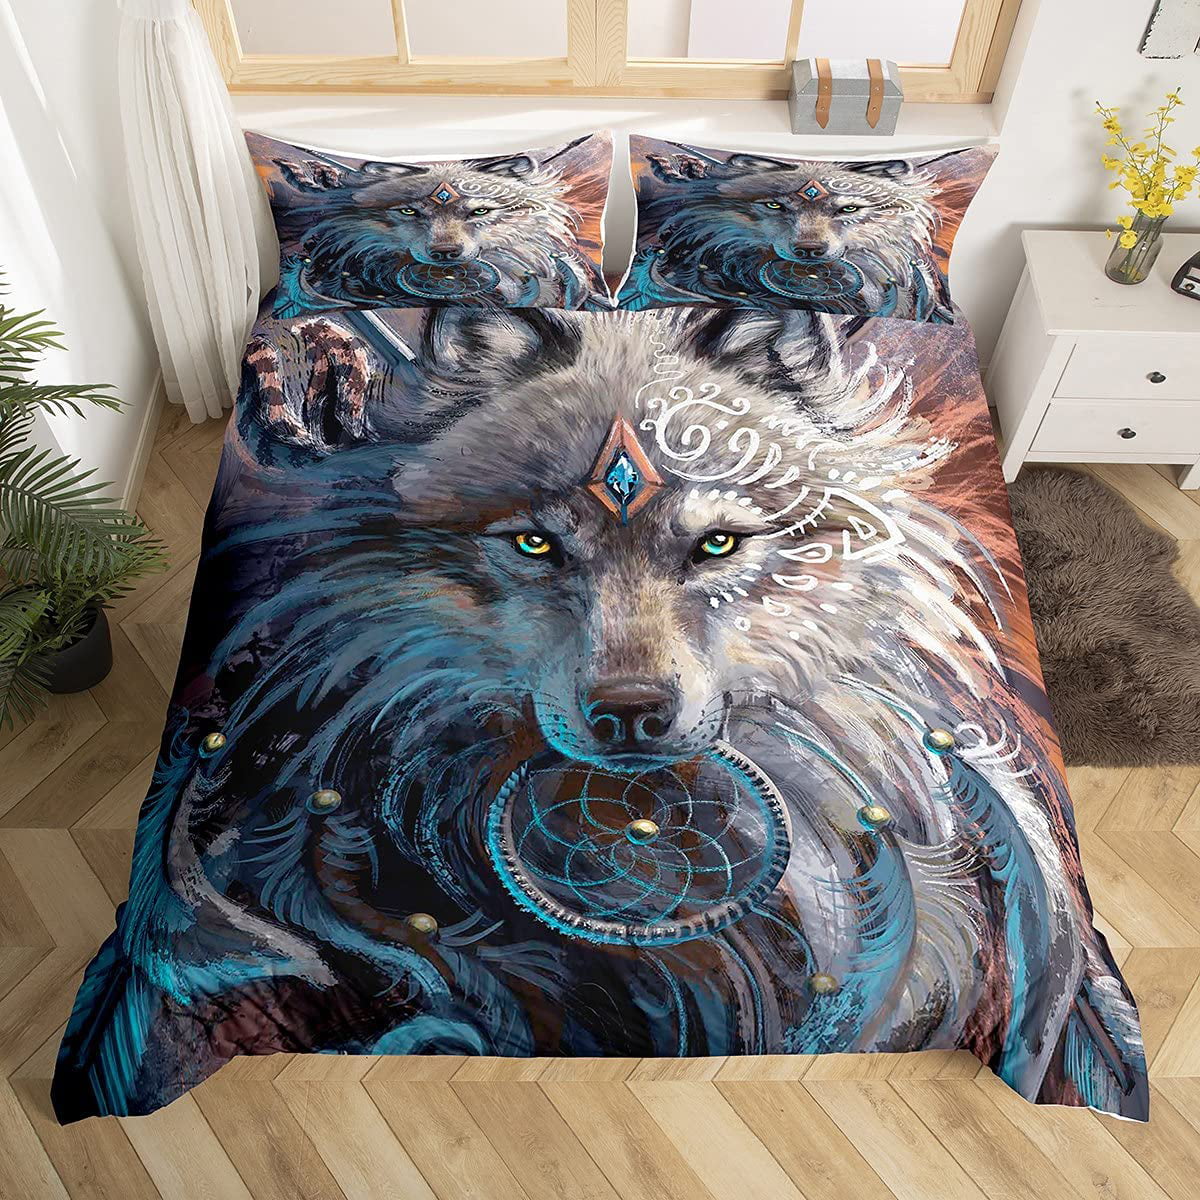 3D Galaxy Dream Catcher Wolf Bedding Set Duvet Cover Pillowcase Quilt Cover Set